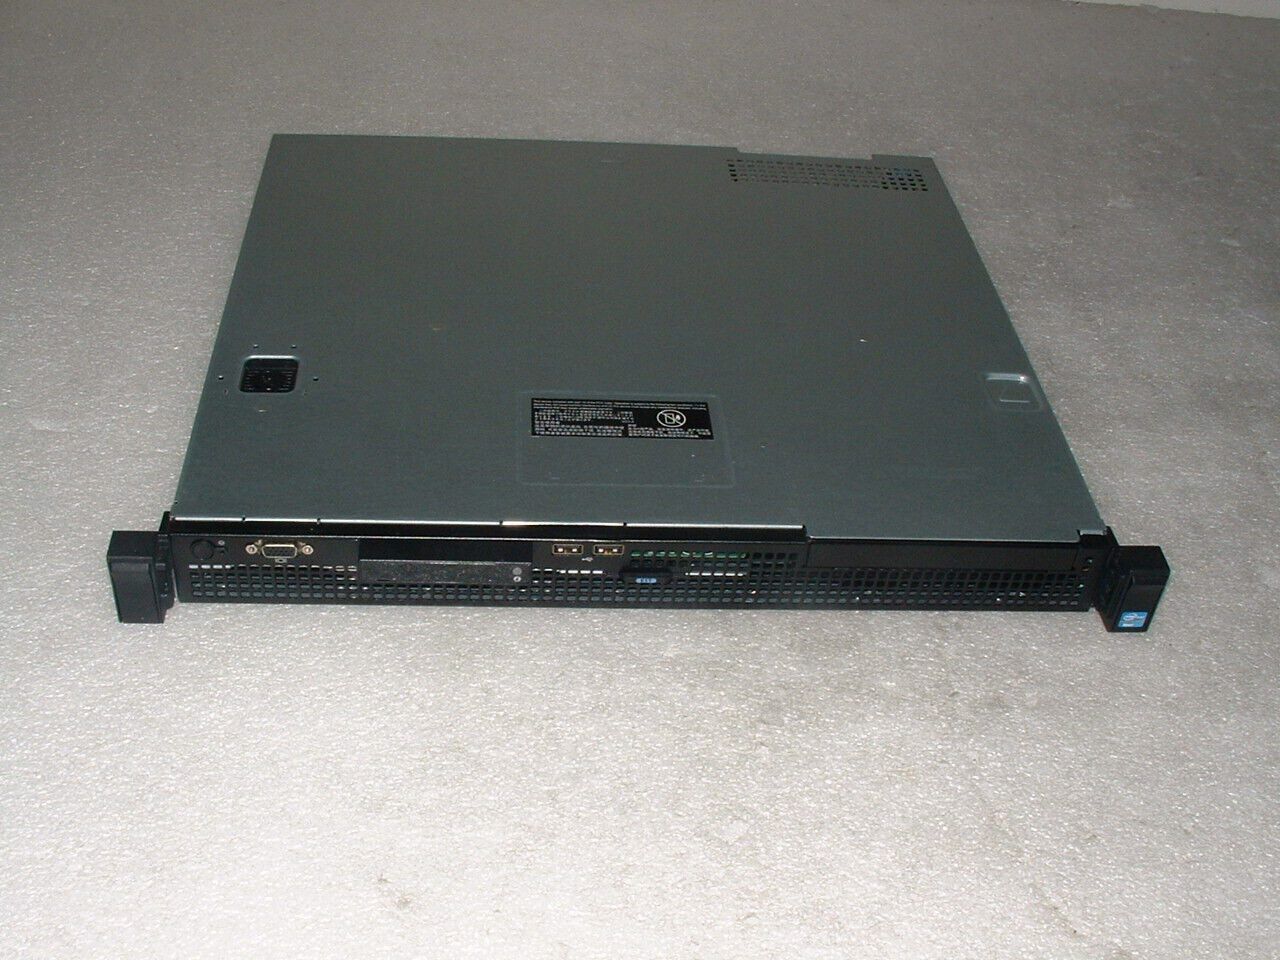 Dell Poweredge R210 II Server Xeon E3-1220 v2 3.1ghz Quad Core / 32gb / 1x Tray